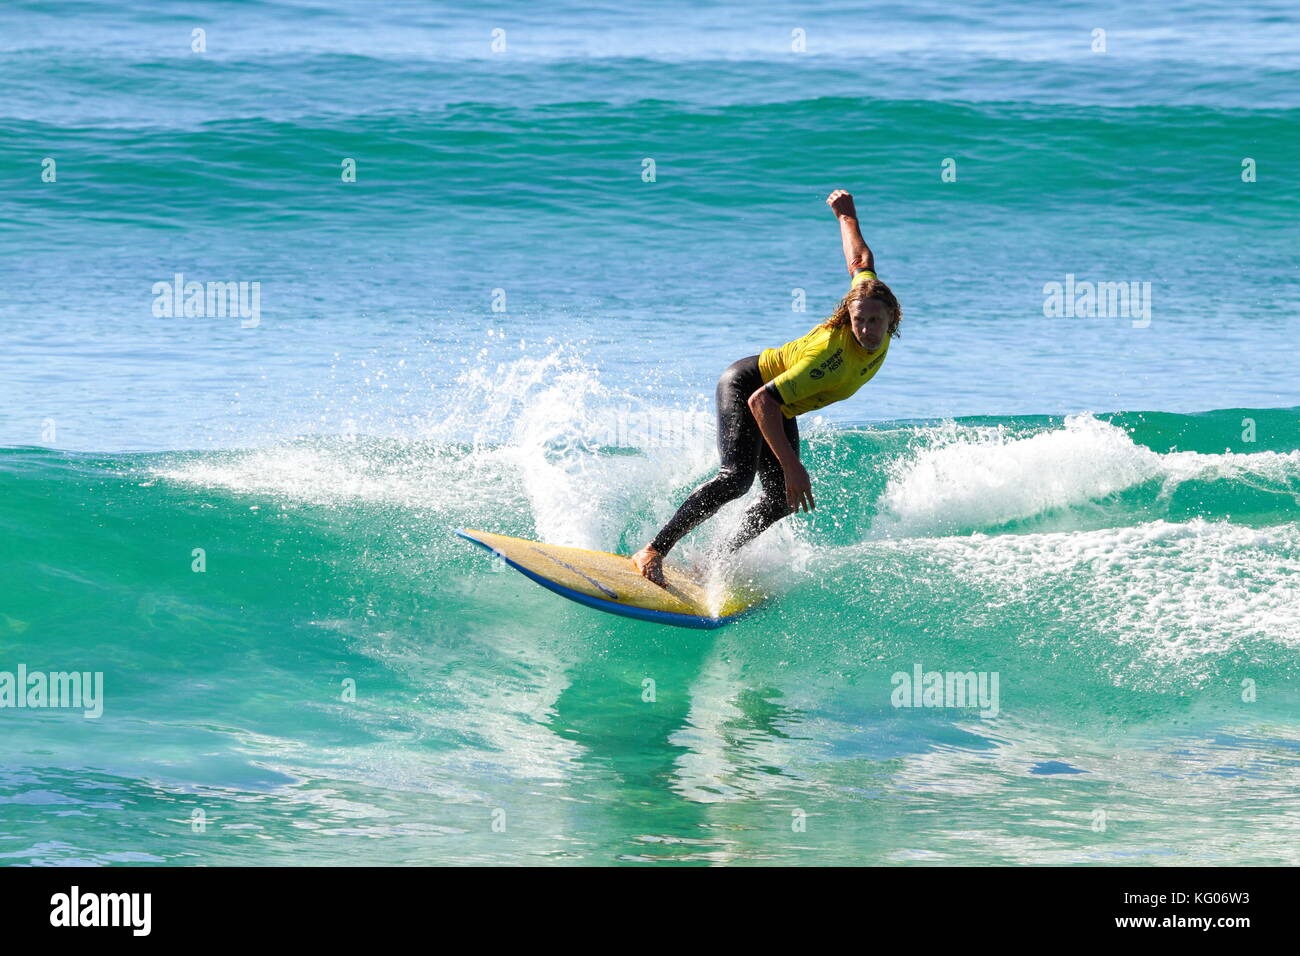 A man surfing a longboard surfboard. Stock Photo